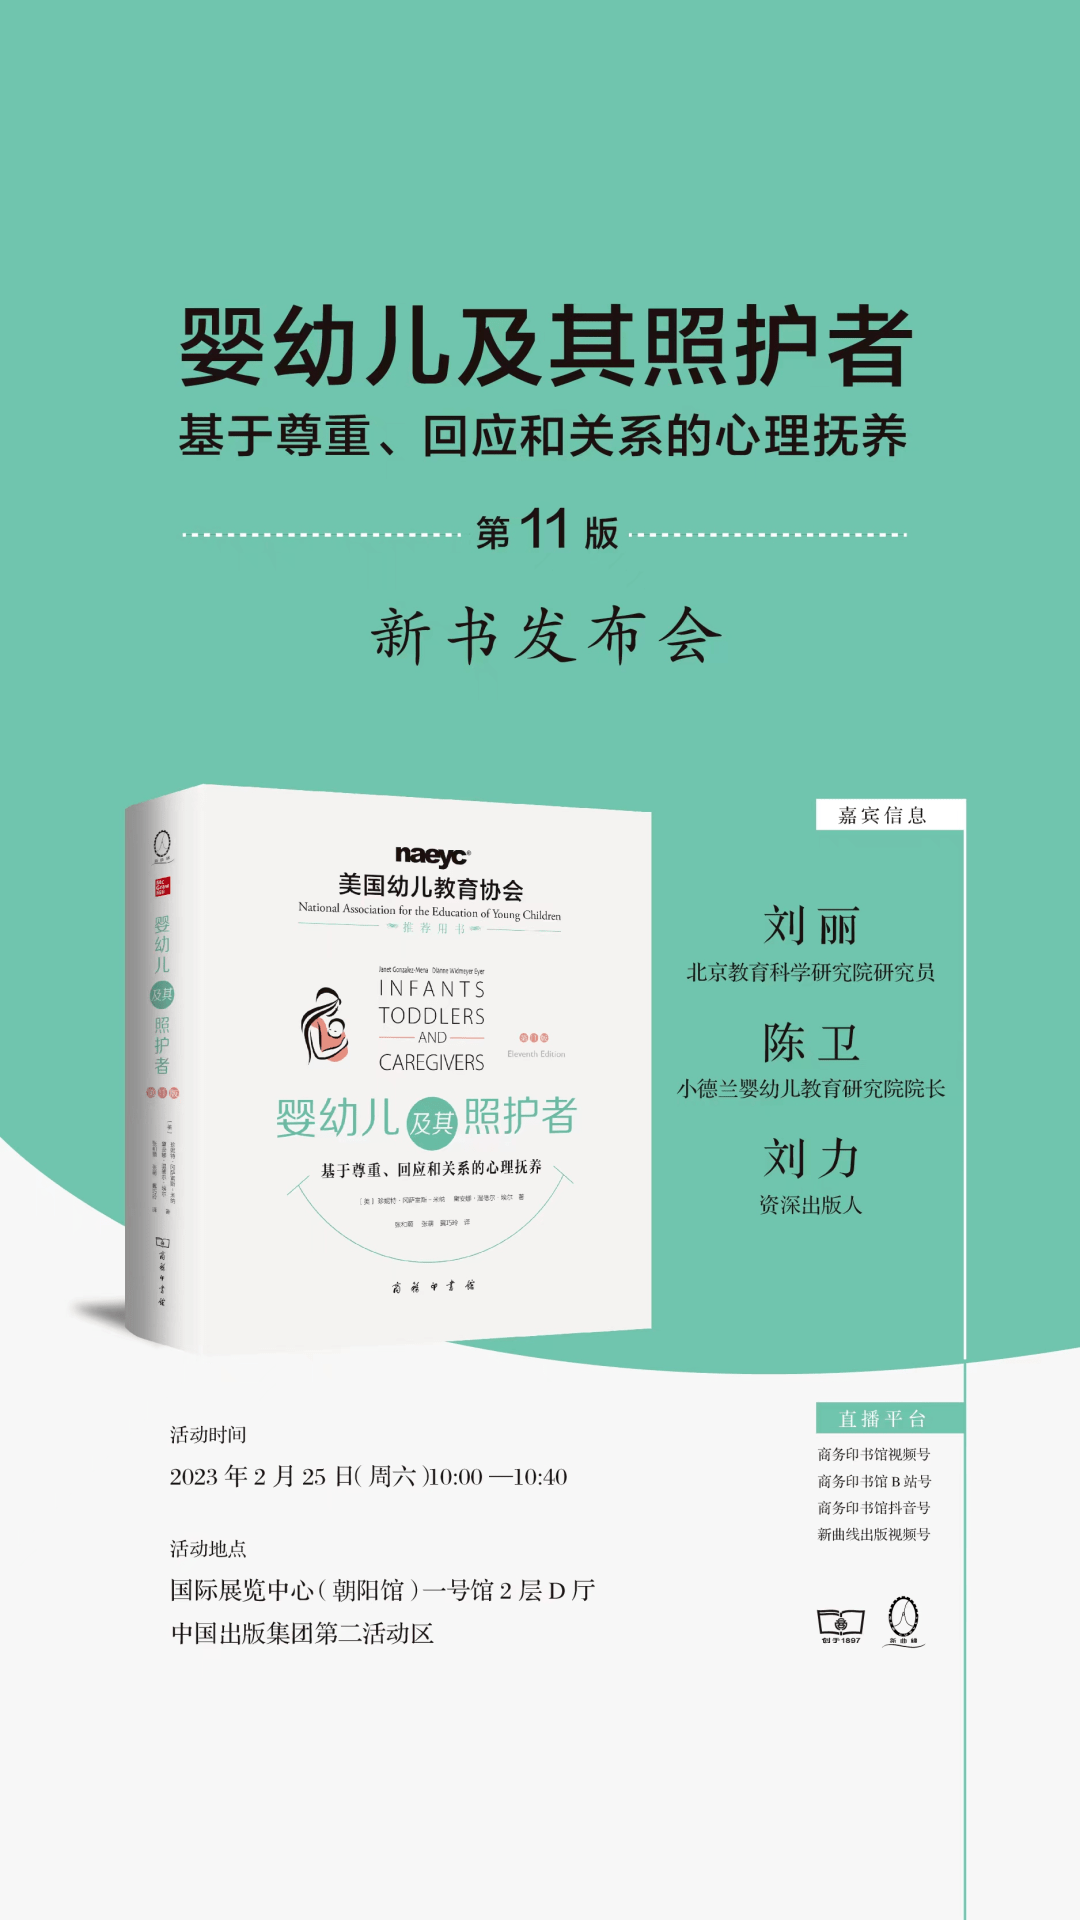 可以看b站的直播苹果版:2月25日活动预告 | 商务印书馆在北京图书订货会